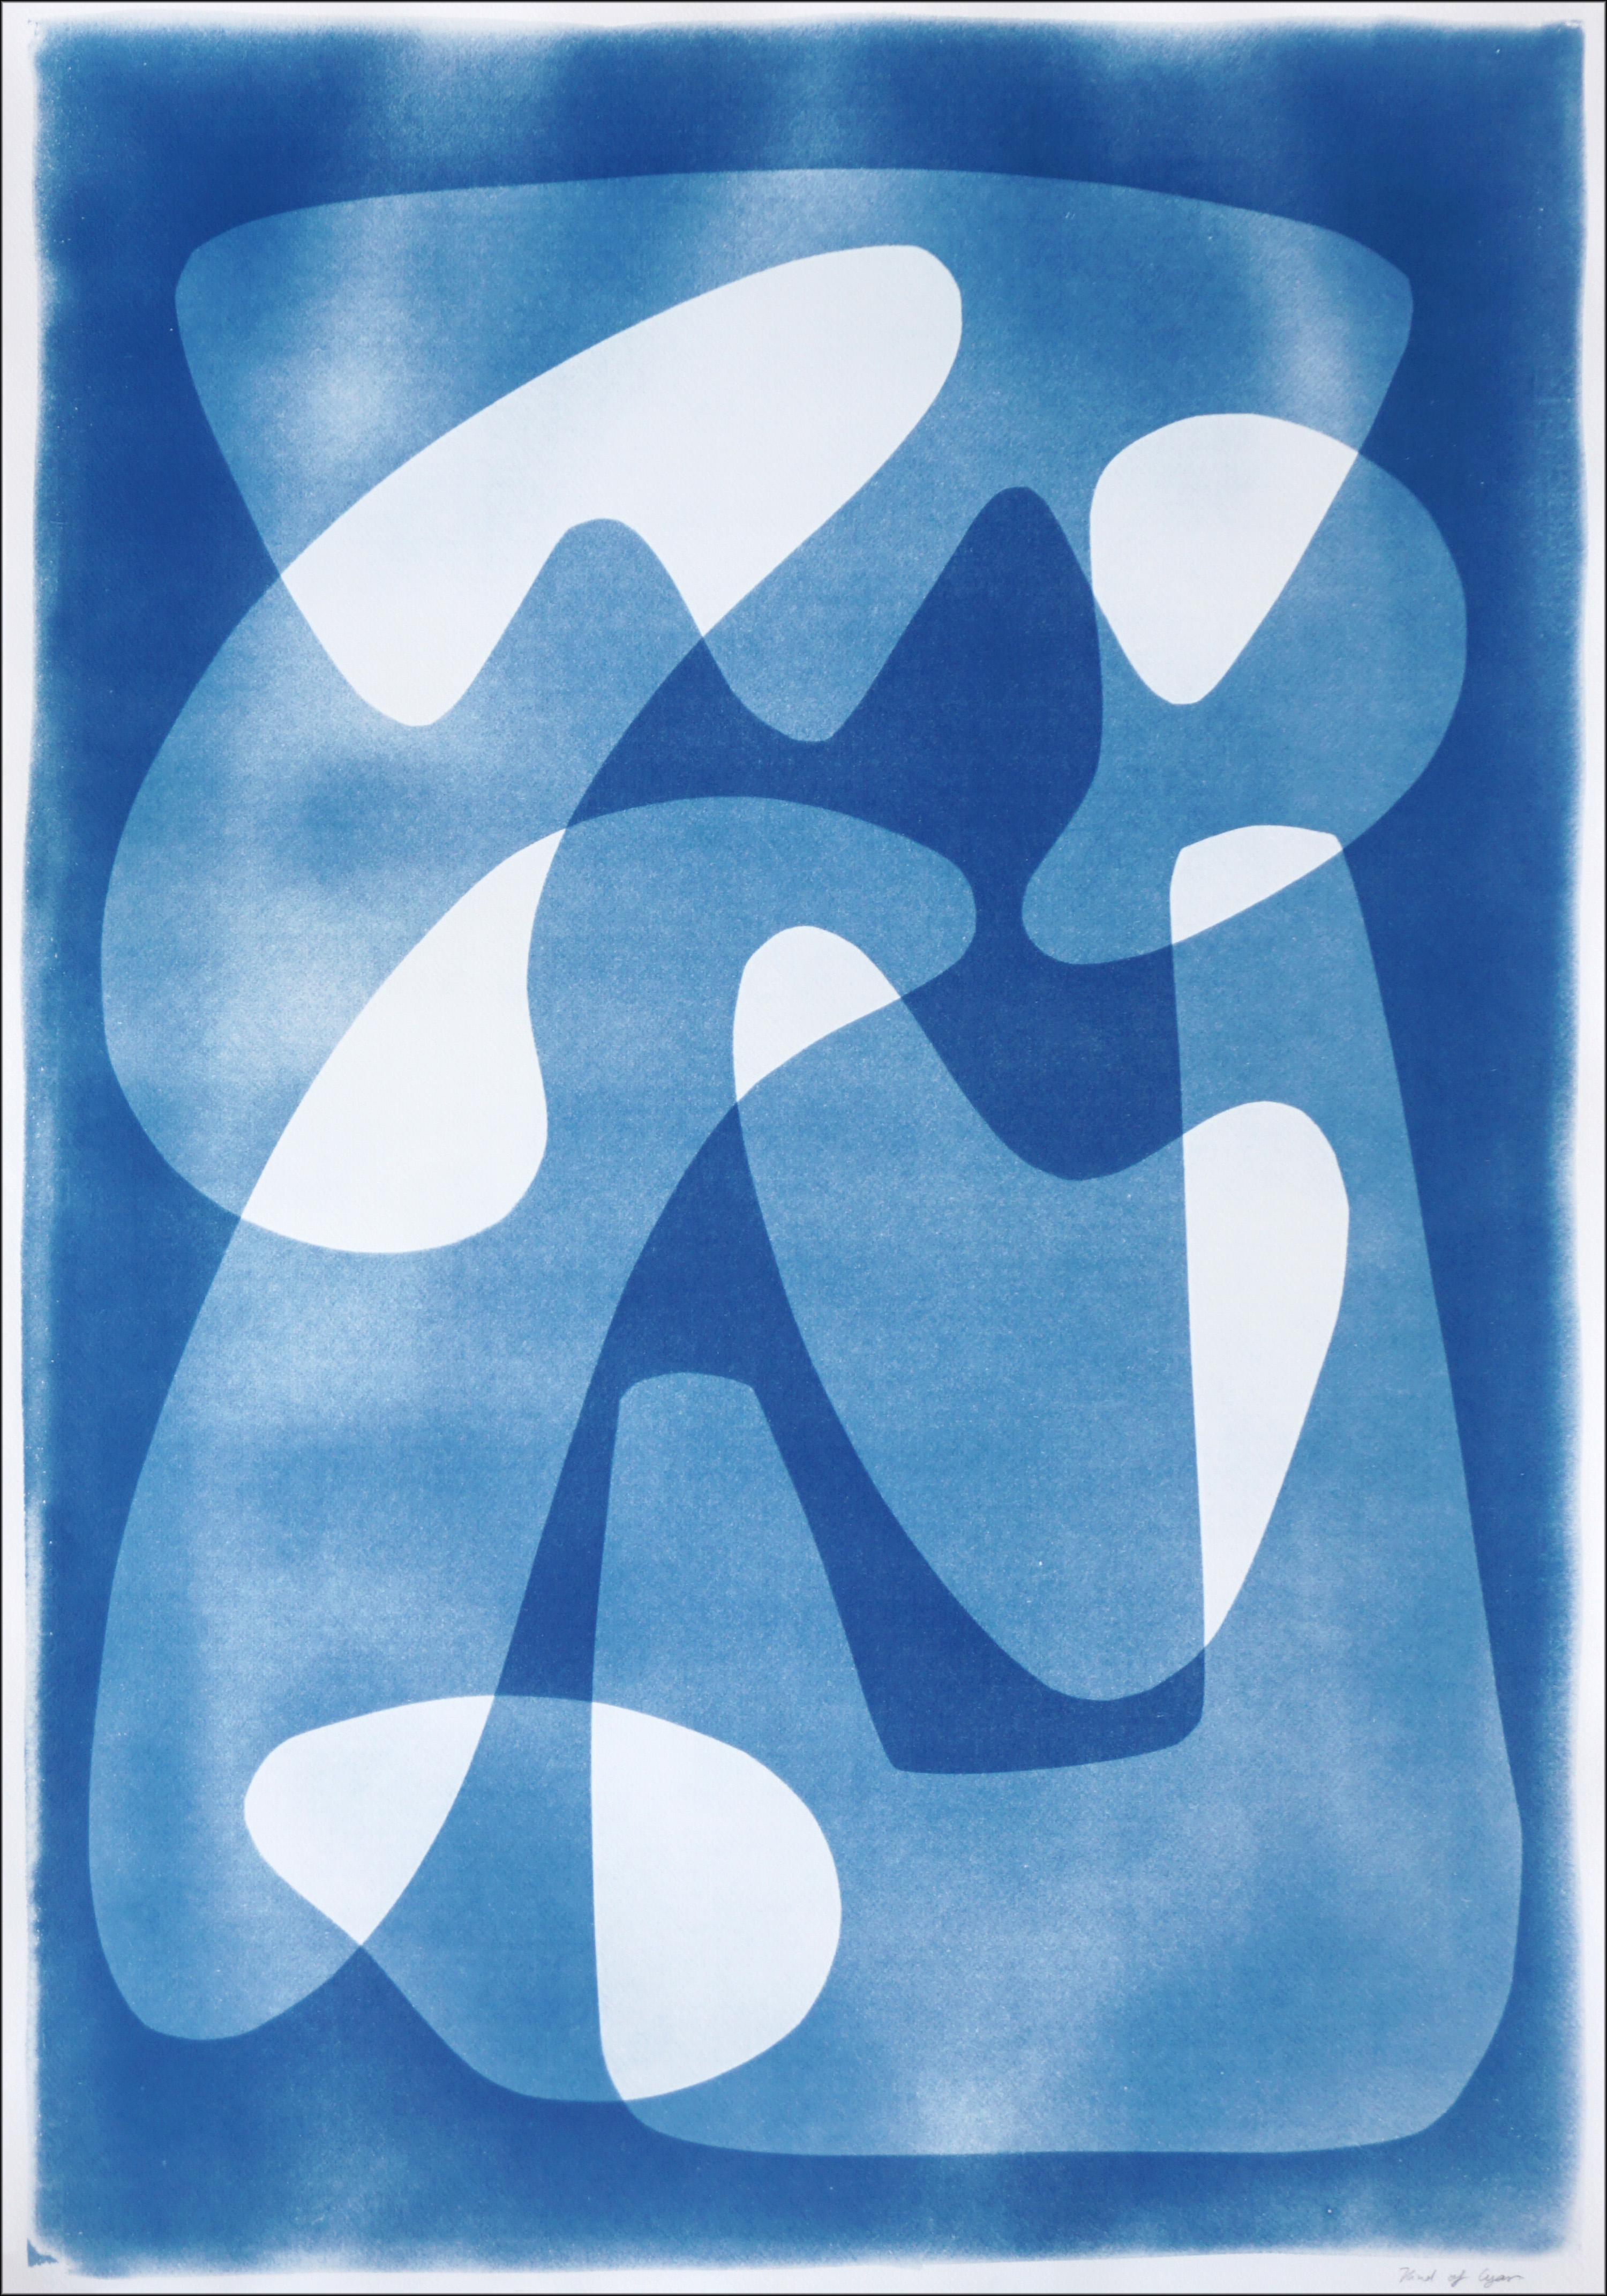 Abstract Print Kind of Cyan - Des palettes flottantes modernes à motif blanc et bleu, cyanotype unique 